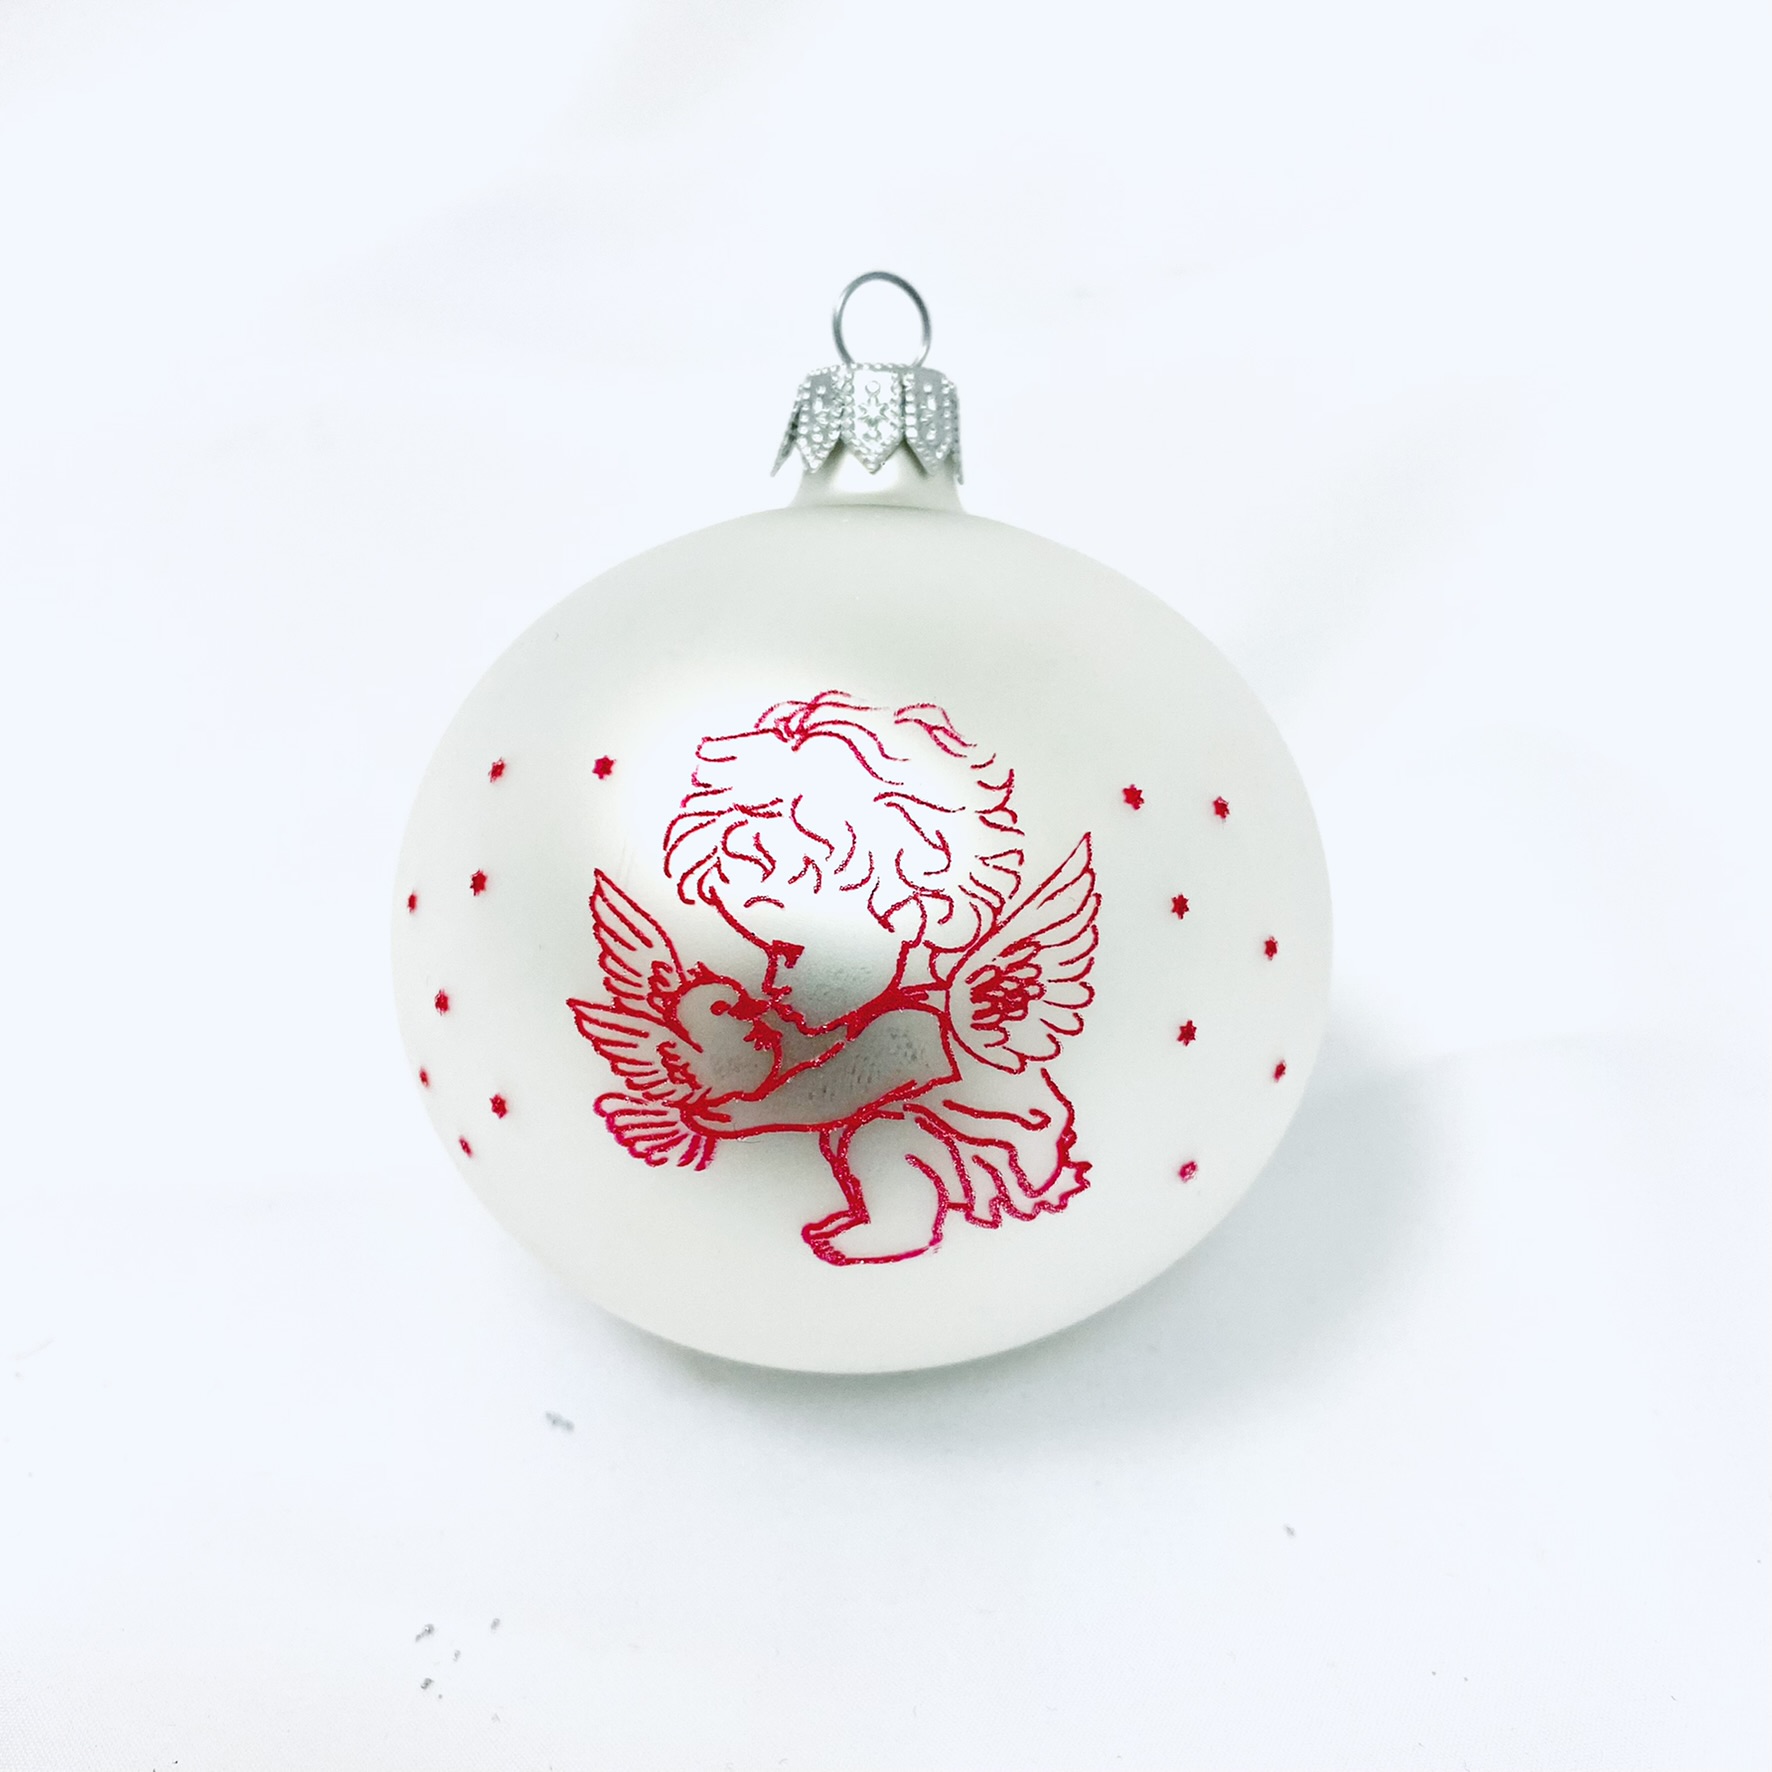 Irisa - Skleněná vánoční ozdoba s textem na přání, anděl červený, 1 ks, 8 cm Balení: 1ks, Barva: bílá, Velikost: 8 cm